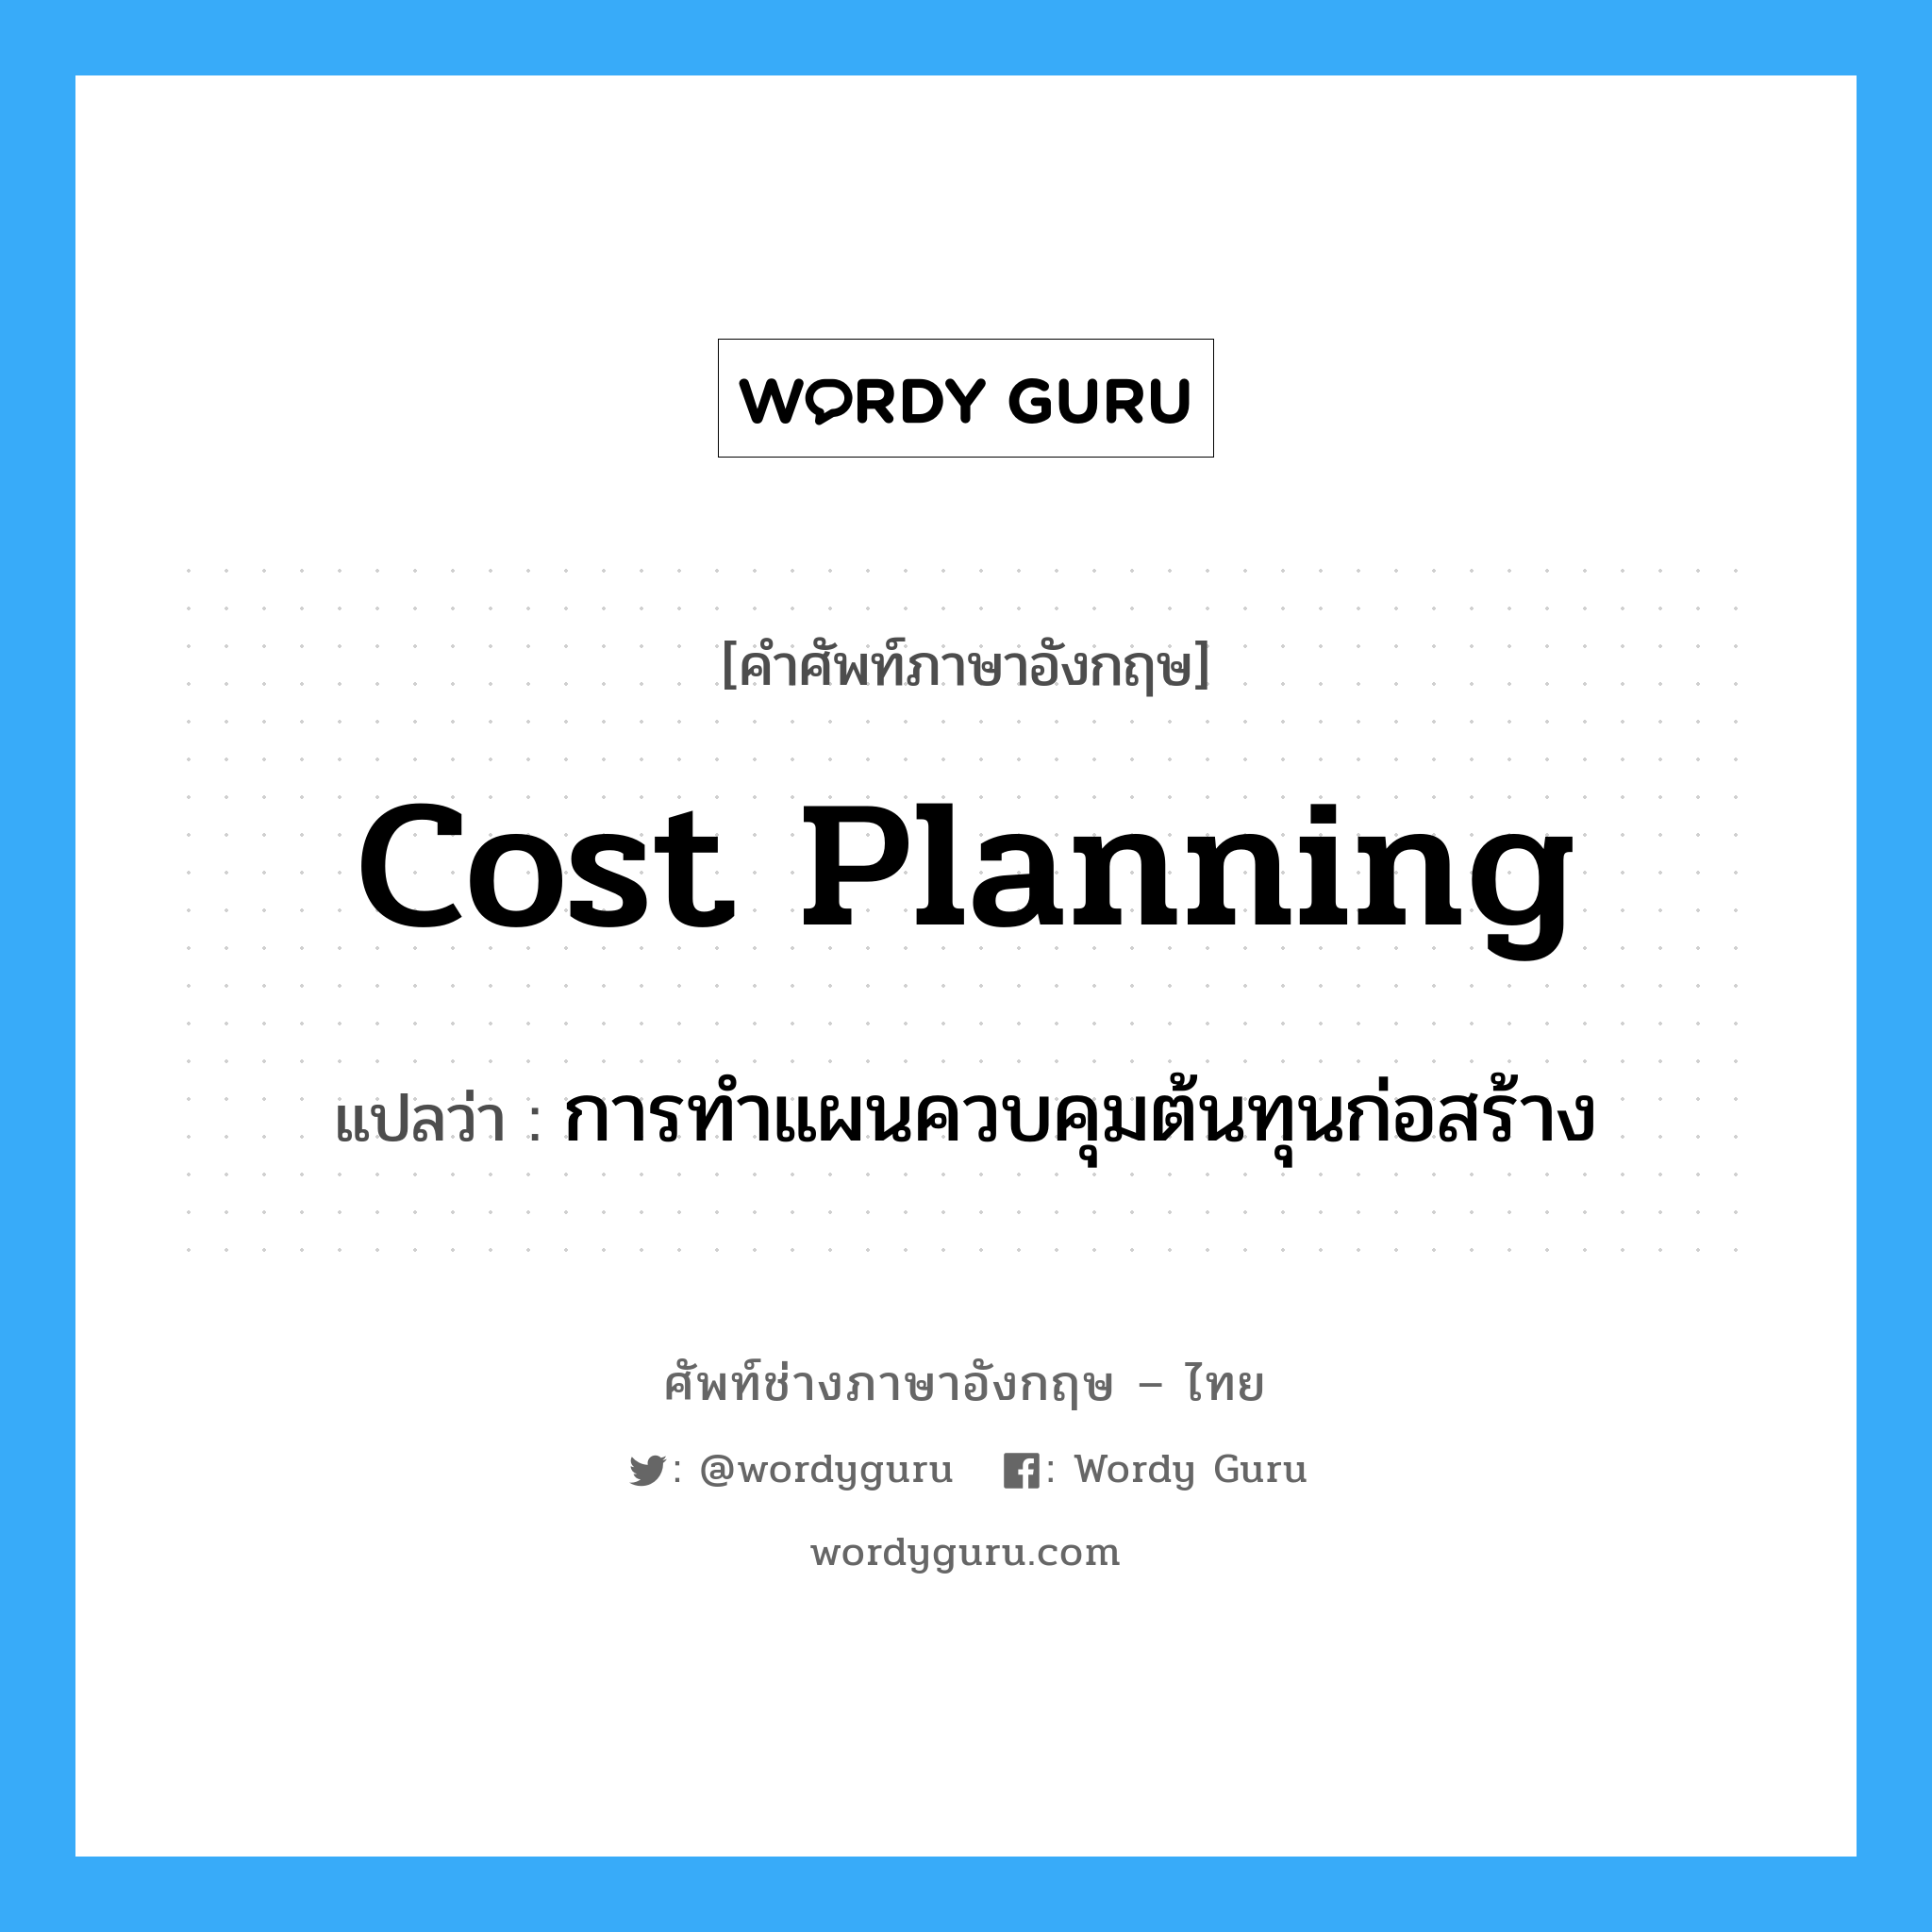 Cost Planning แปลว่า?, คำศัพท์ช่างภาษาอังกฤษ - ไทย Cost Planning คำศัพท์ภาษาอังกฤษ Cost Planning แปลว่า การทำแผนควบคุมต้นทุนก่อสร้าง